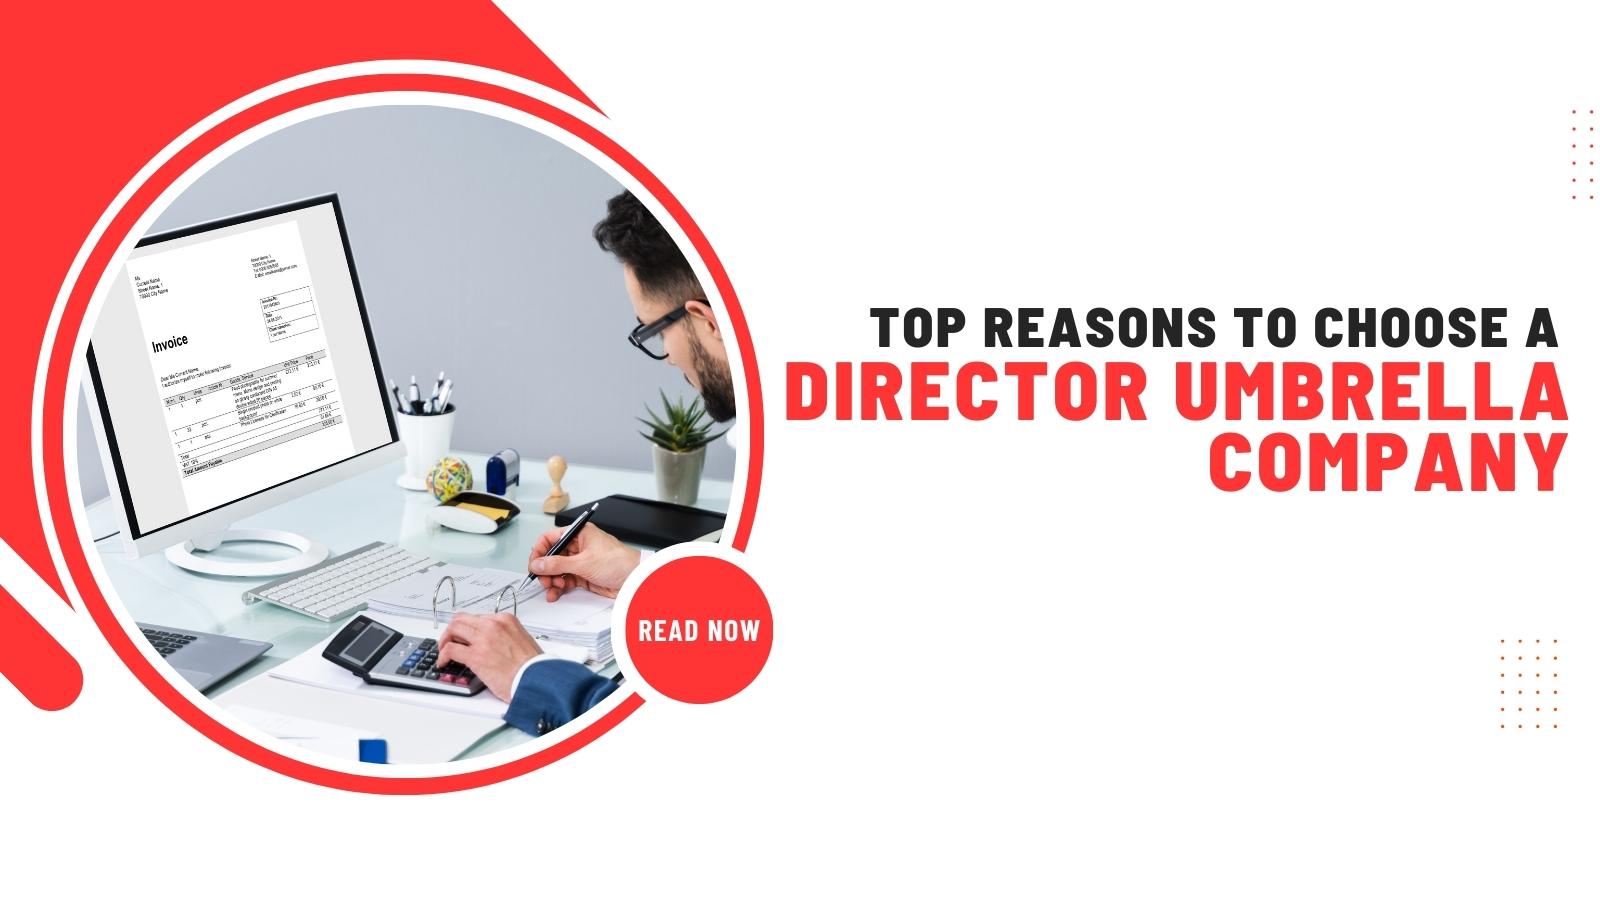 Top Reasons to Choose a Director Umbrella Company